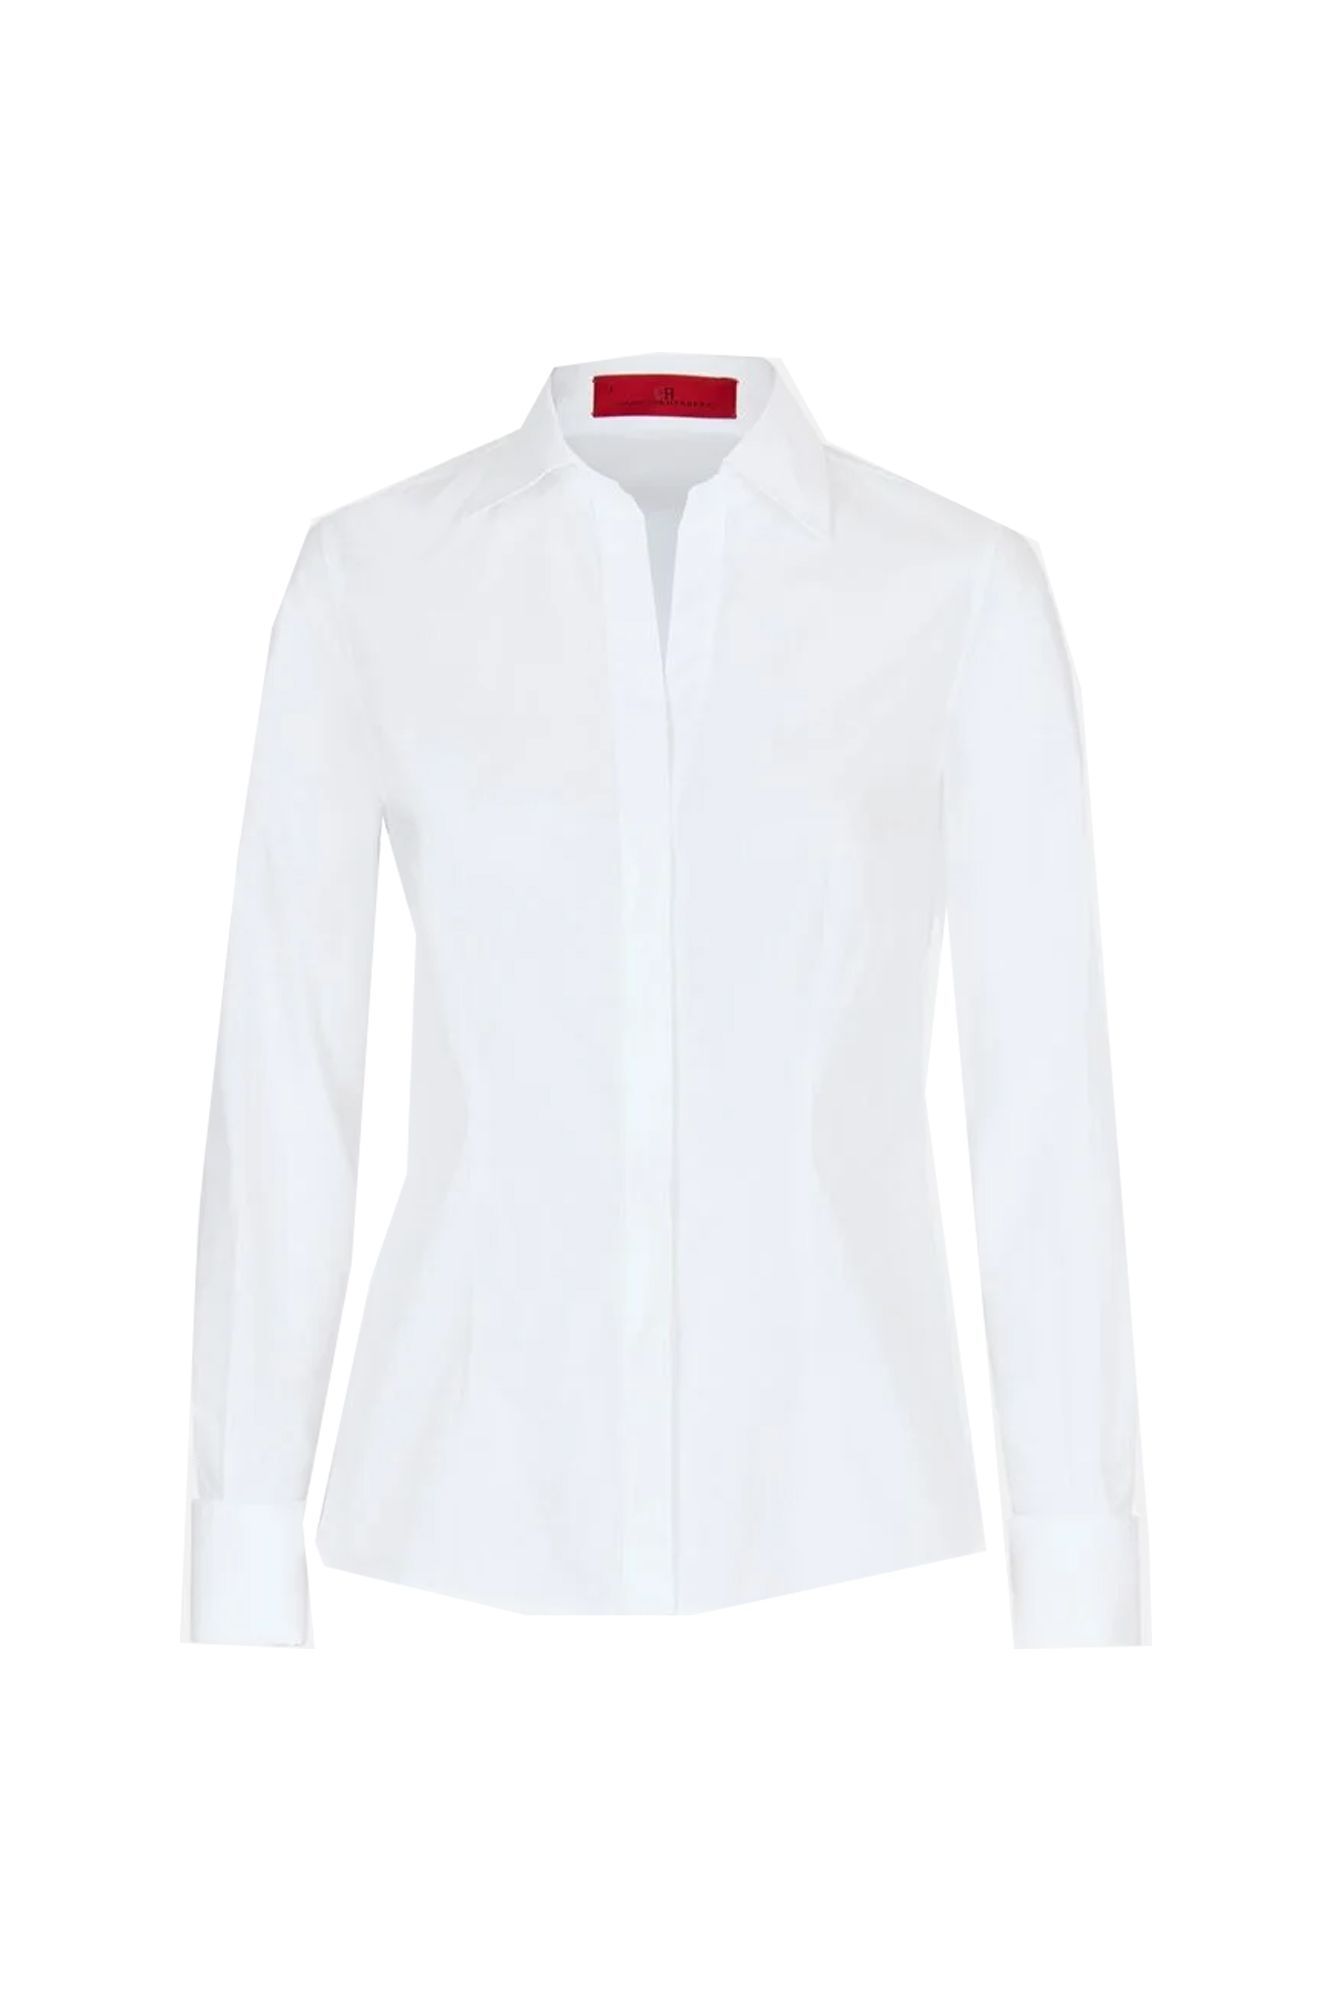 Cómo vestir impecable con camisa blanca